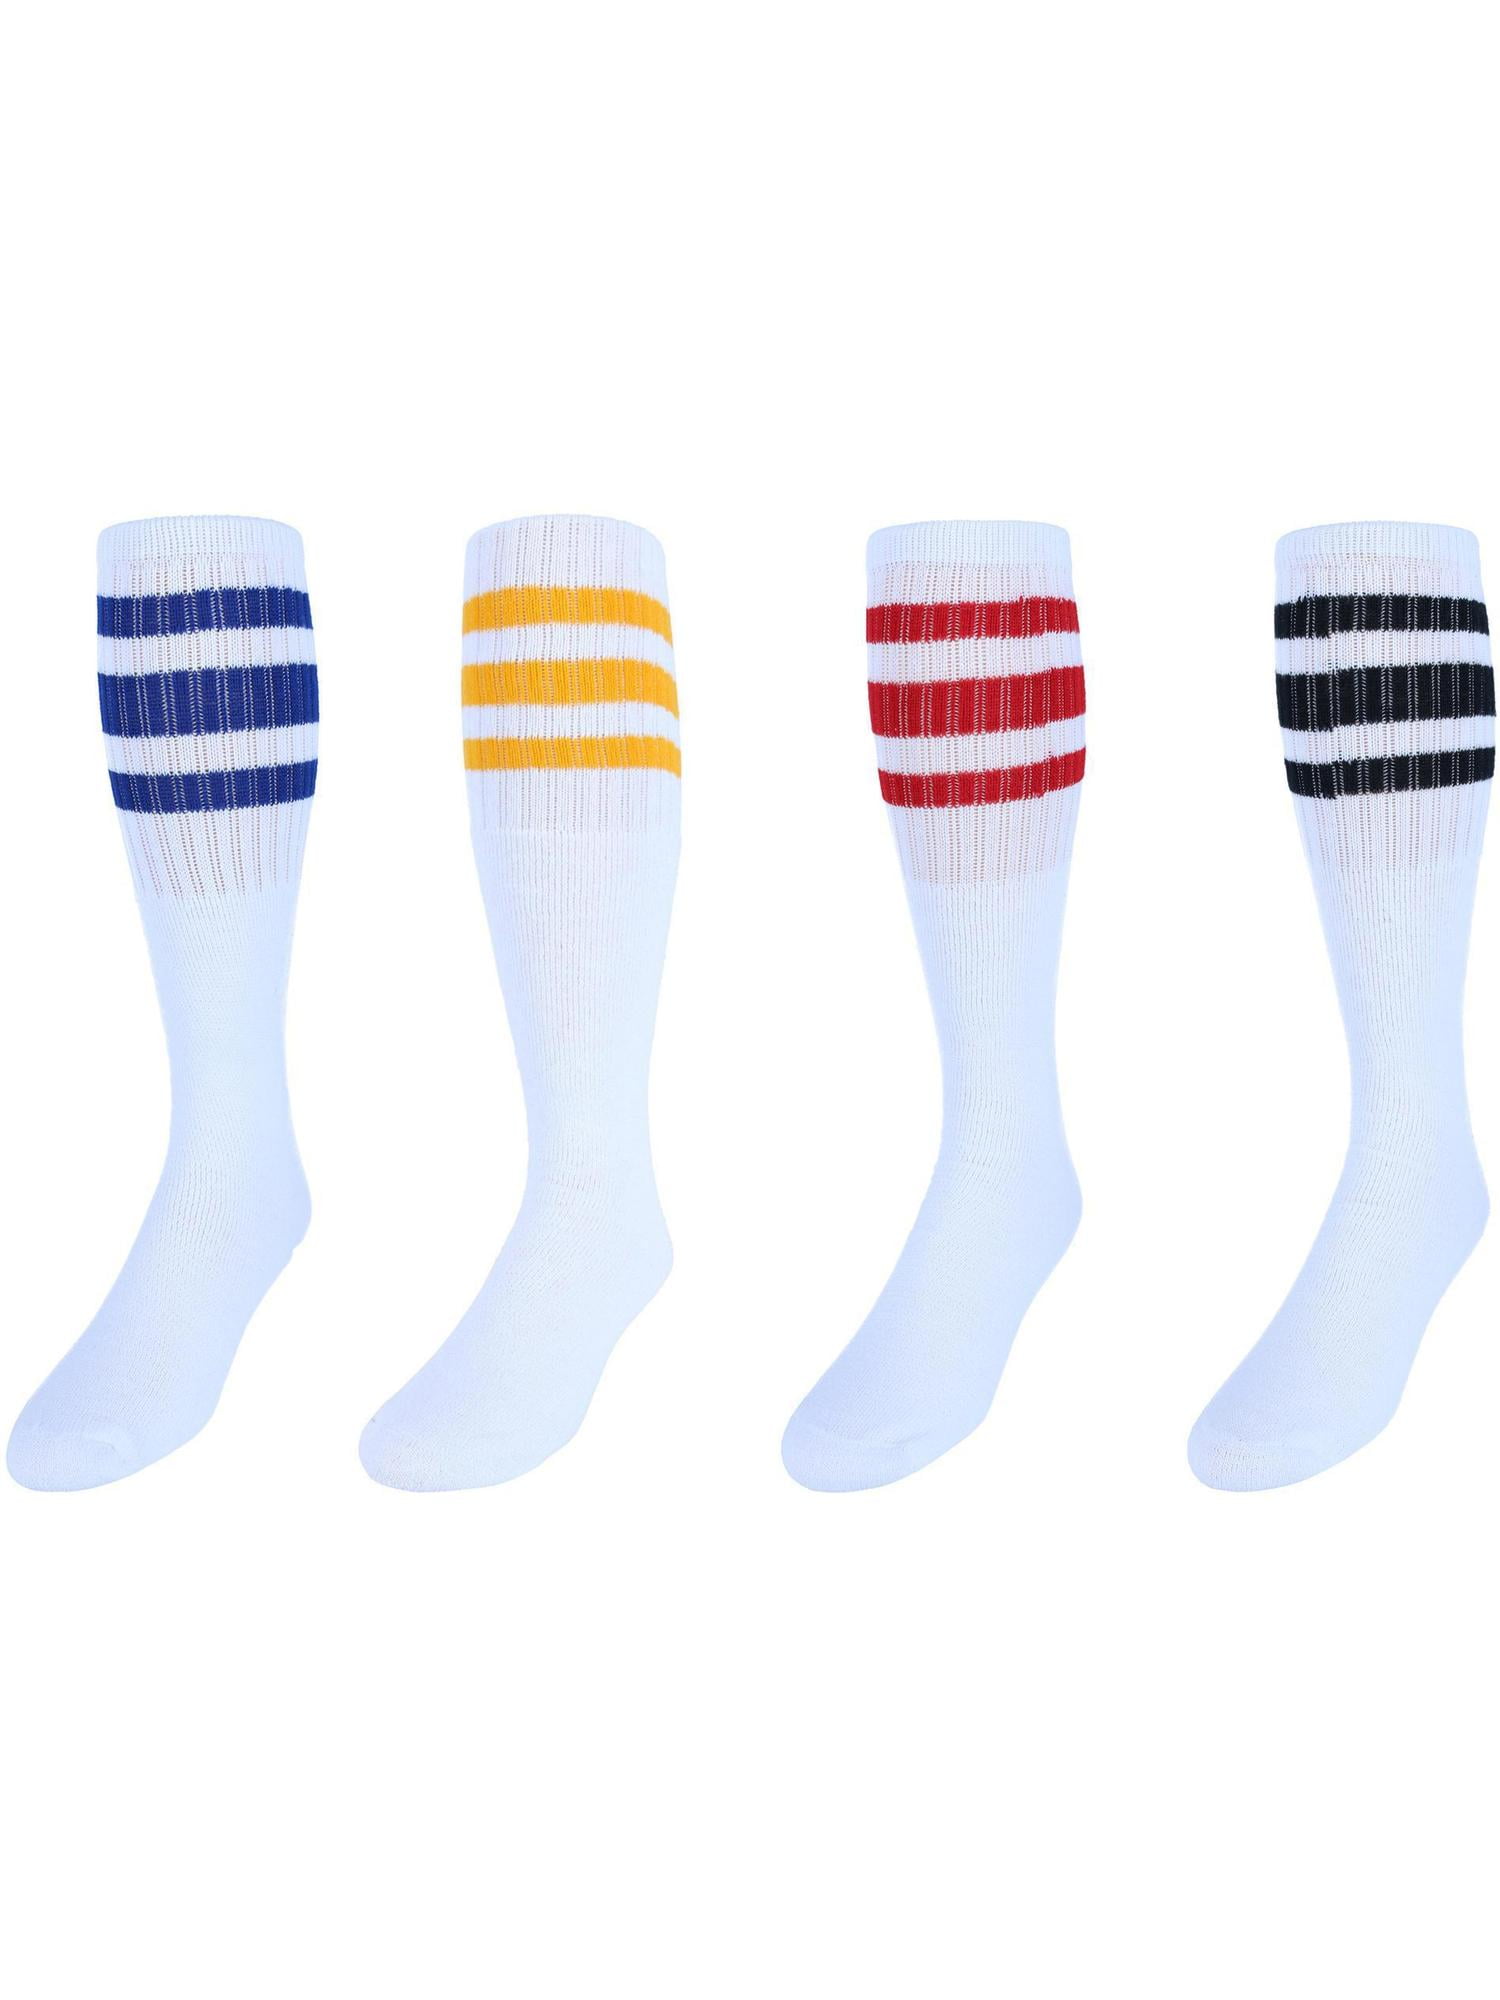 Mens 5 PAIRS Classic Multi Striped Sports Tube Socks,Sock Size 10-15,  White, Large